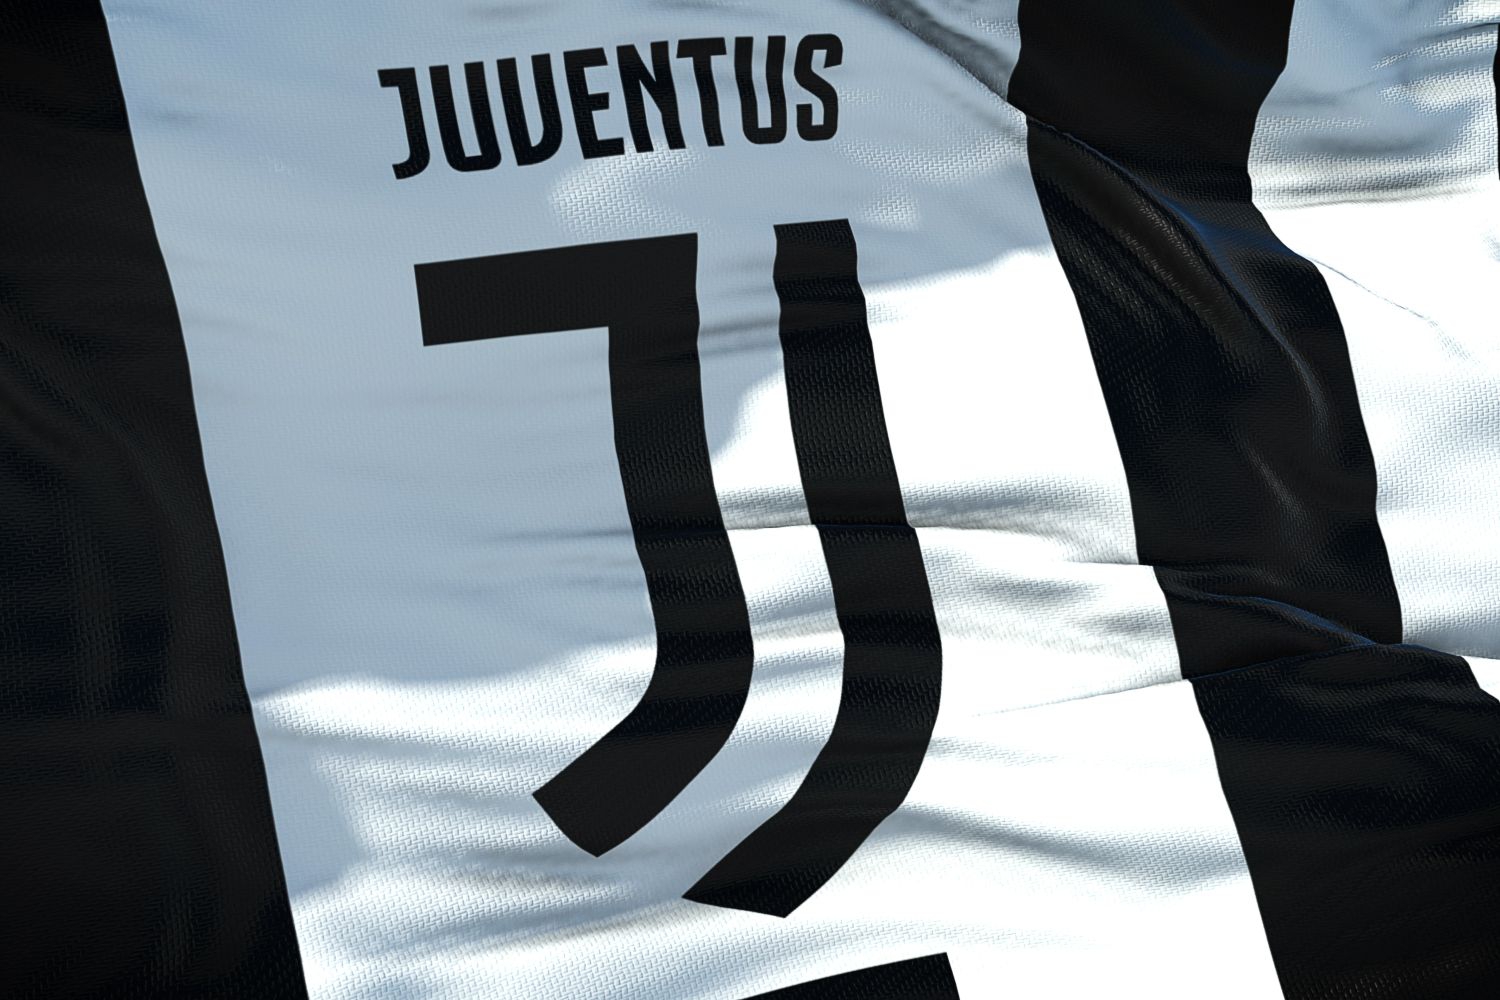 OFICJALNIE: Juventus w Lidze Konferencji Europy. Przynajmniej na razie...